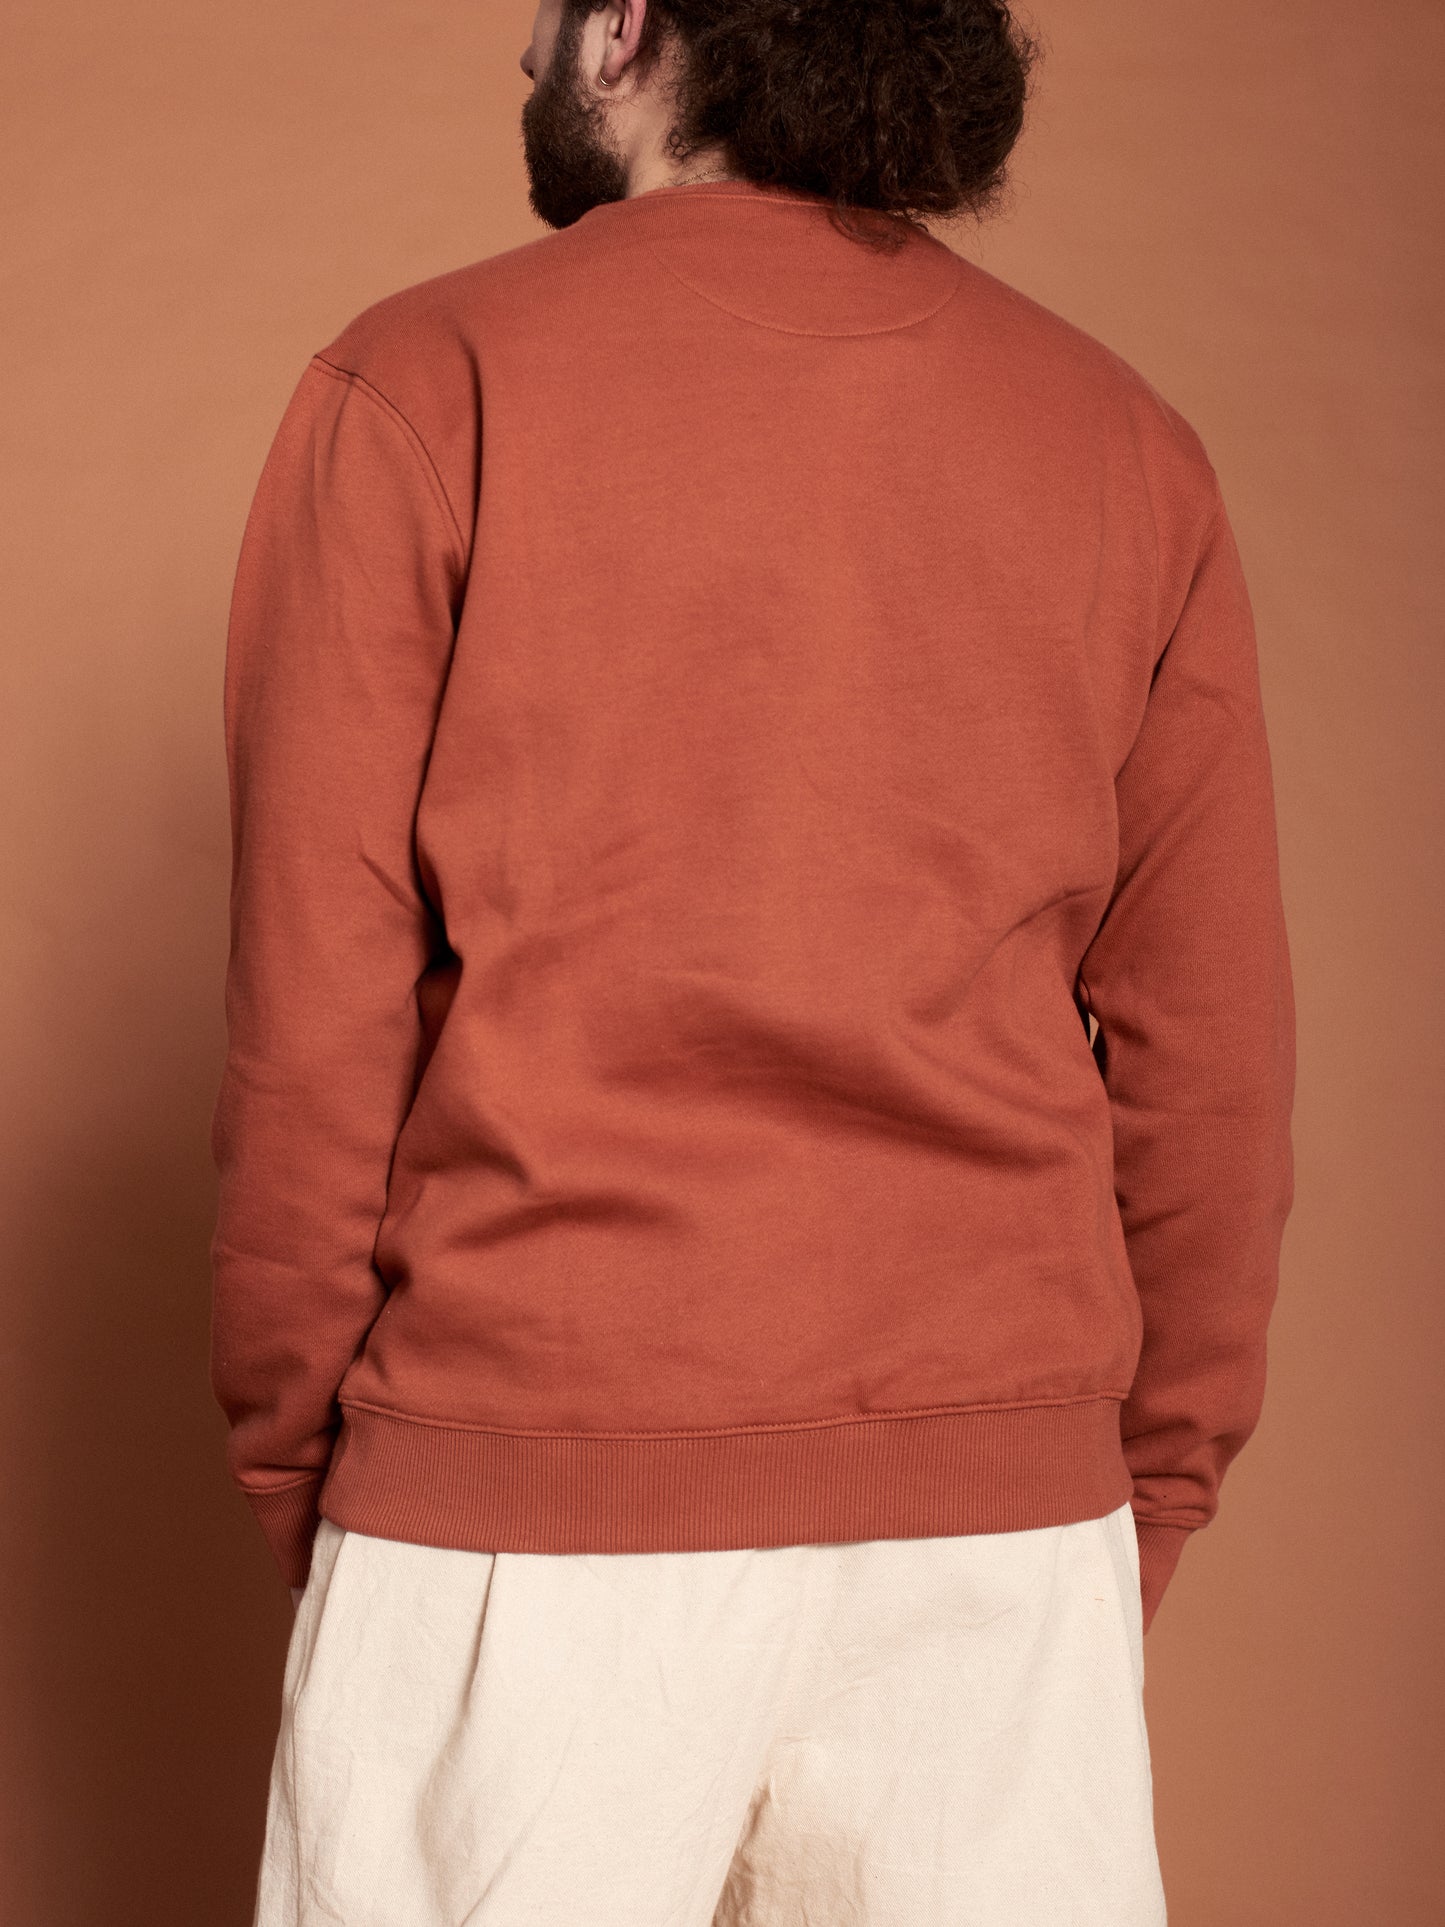 CURVES men's orange pullover